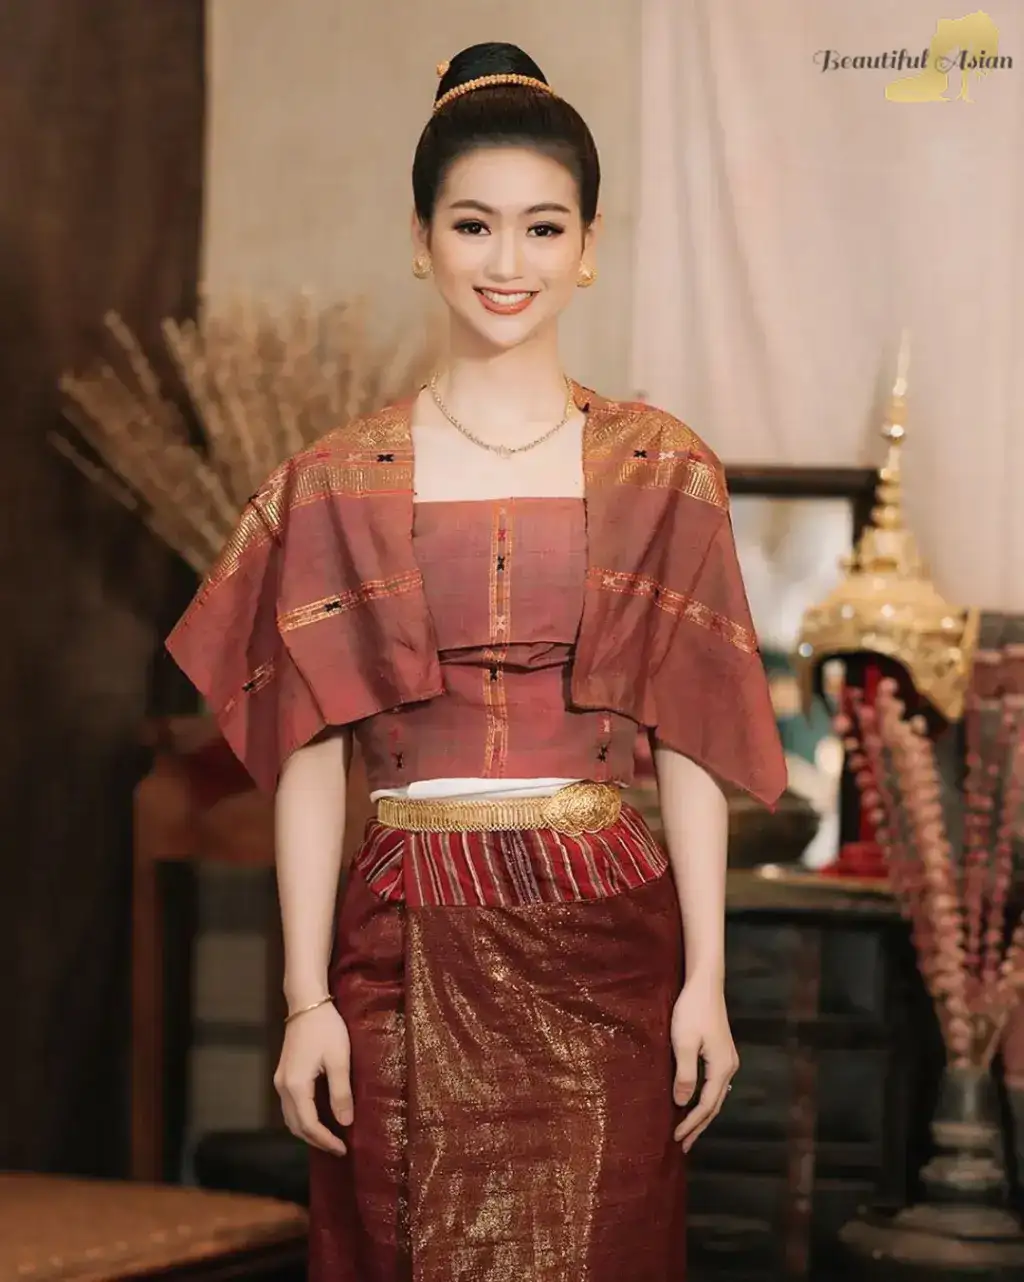 elegant Laotian girl